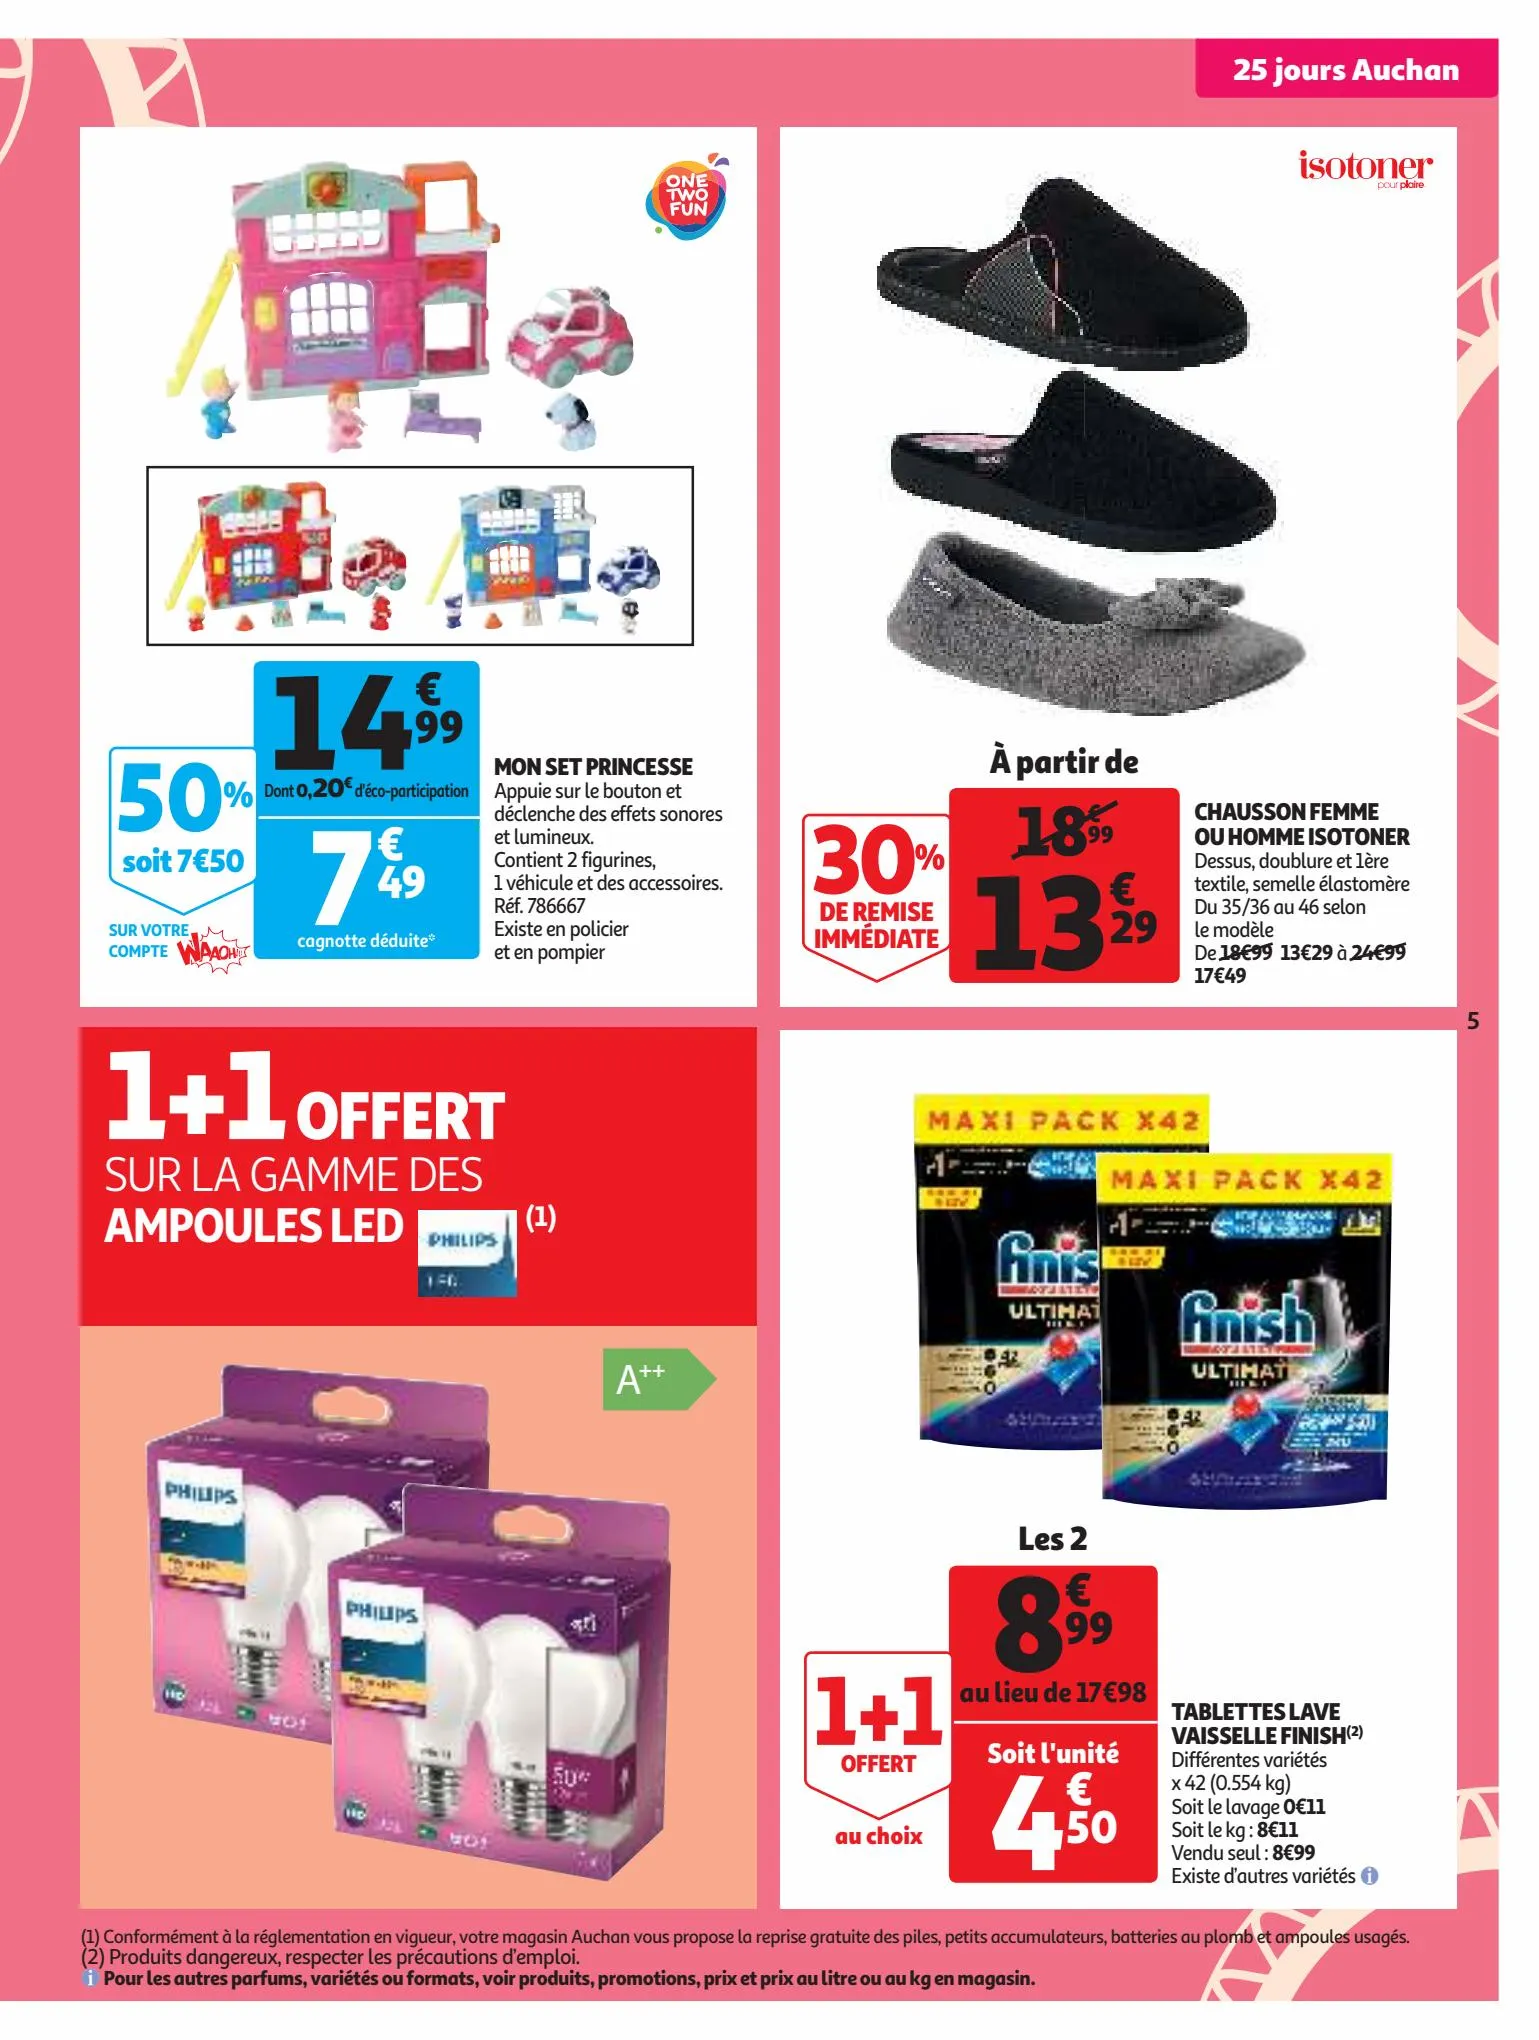 Catalogue 25 jours Auchan, page 00005